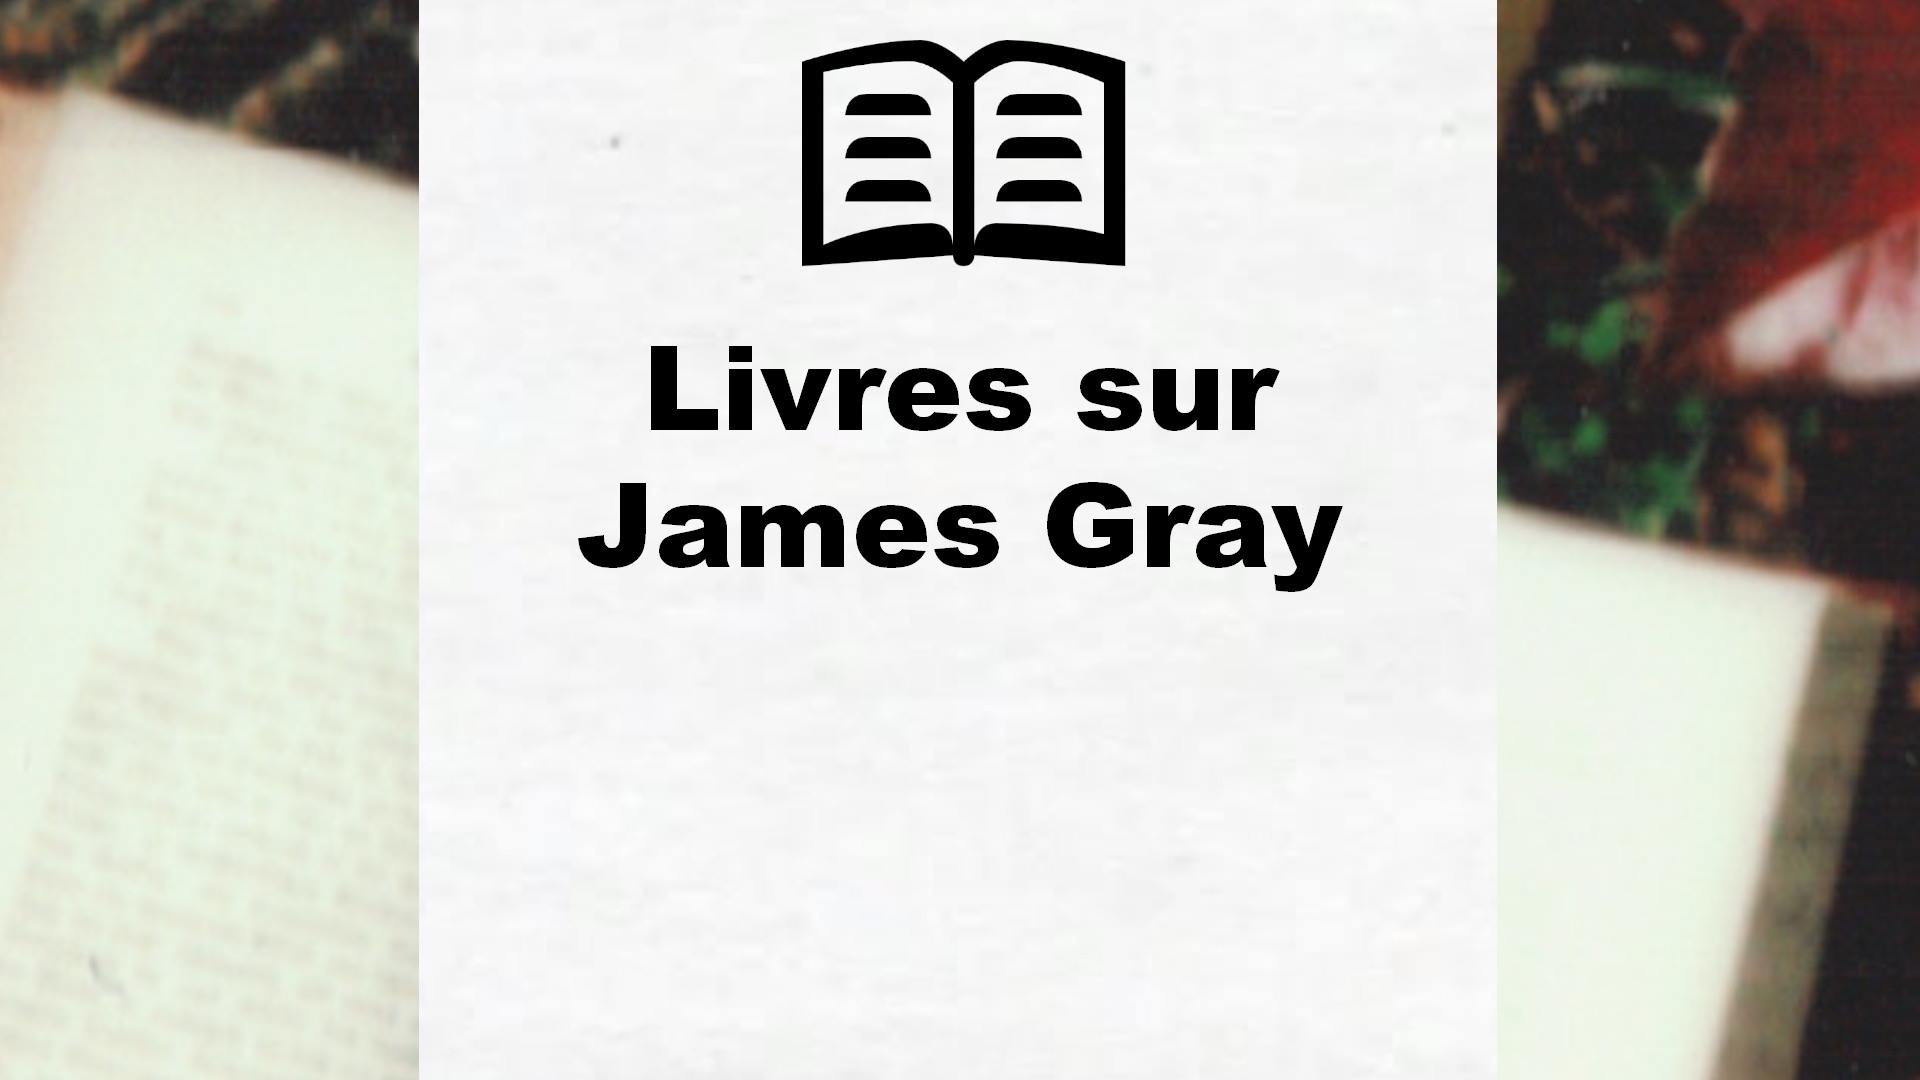 Livres sur James Gray